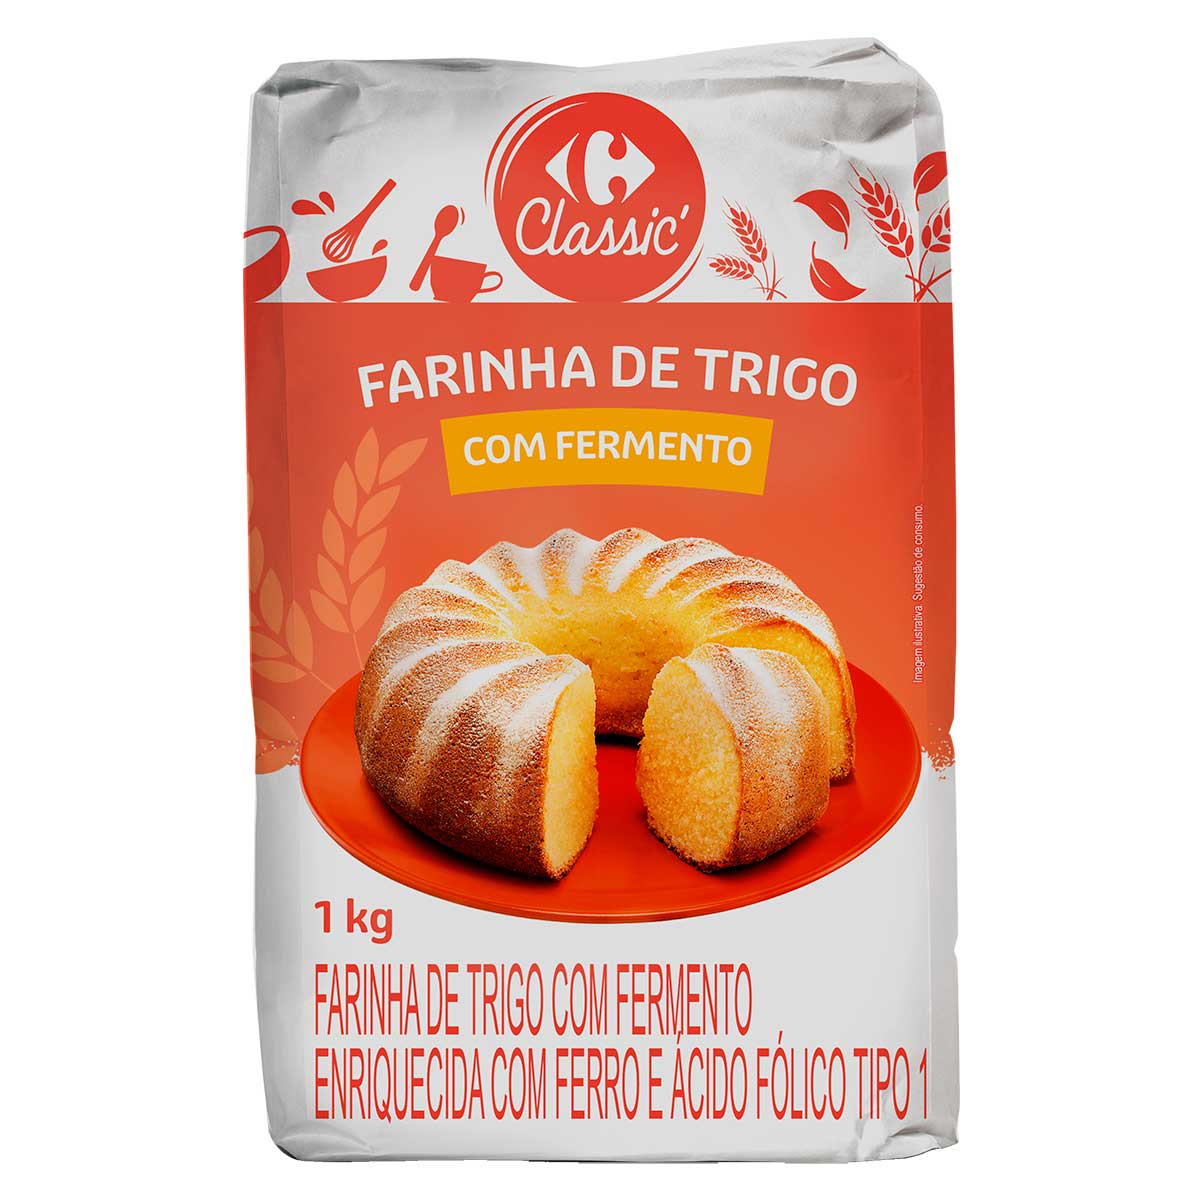 farinha-de-trigo-com-fermento-carrefour-classic-1-kg-1.jpg